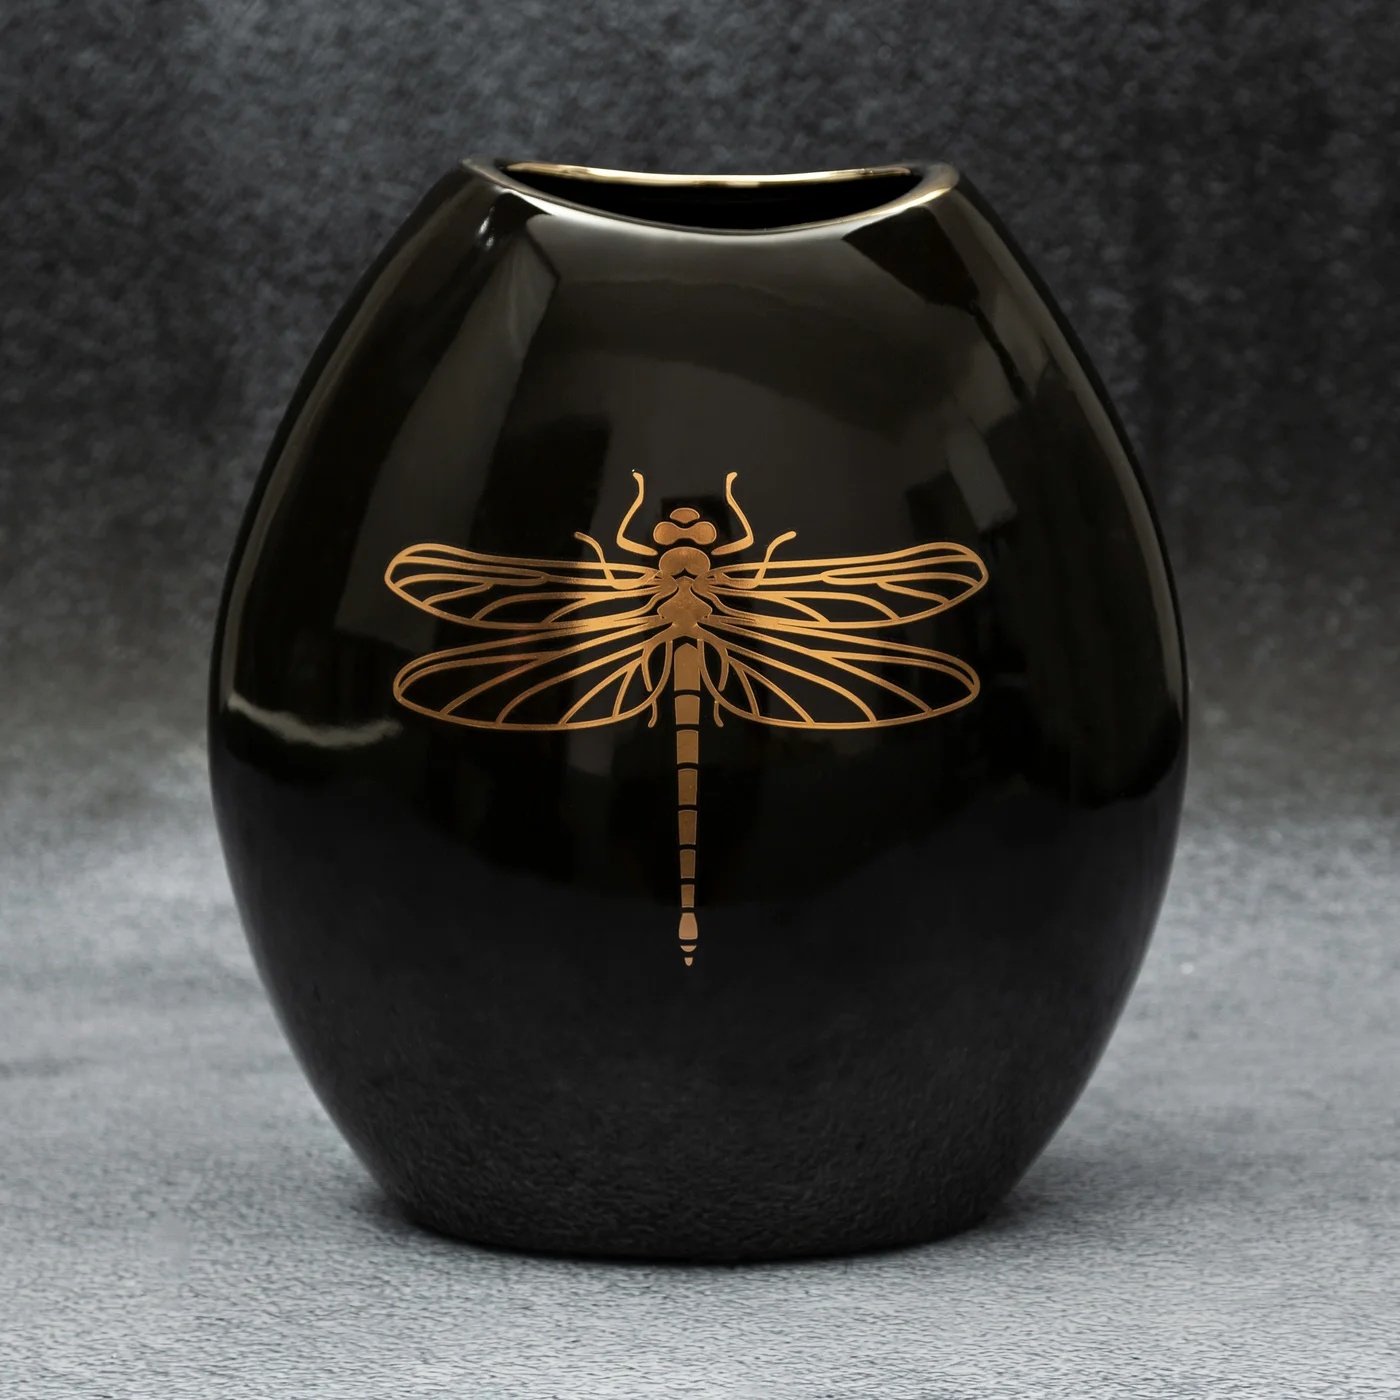 Wazon ceramiczny z nadrukiem złotej ważki